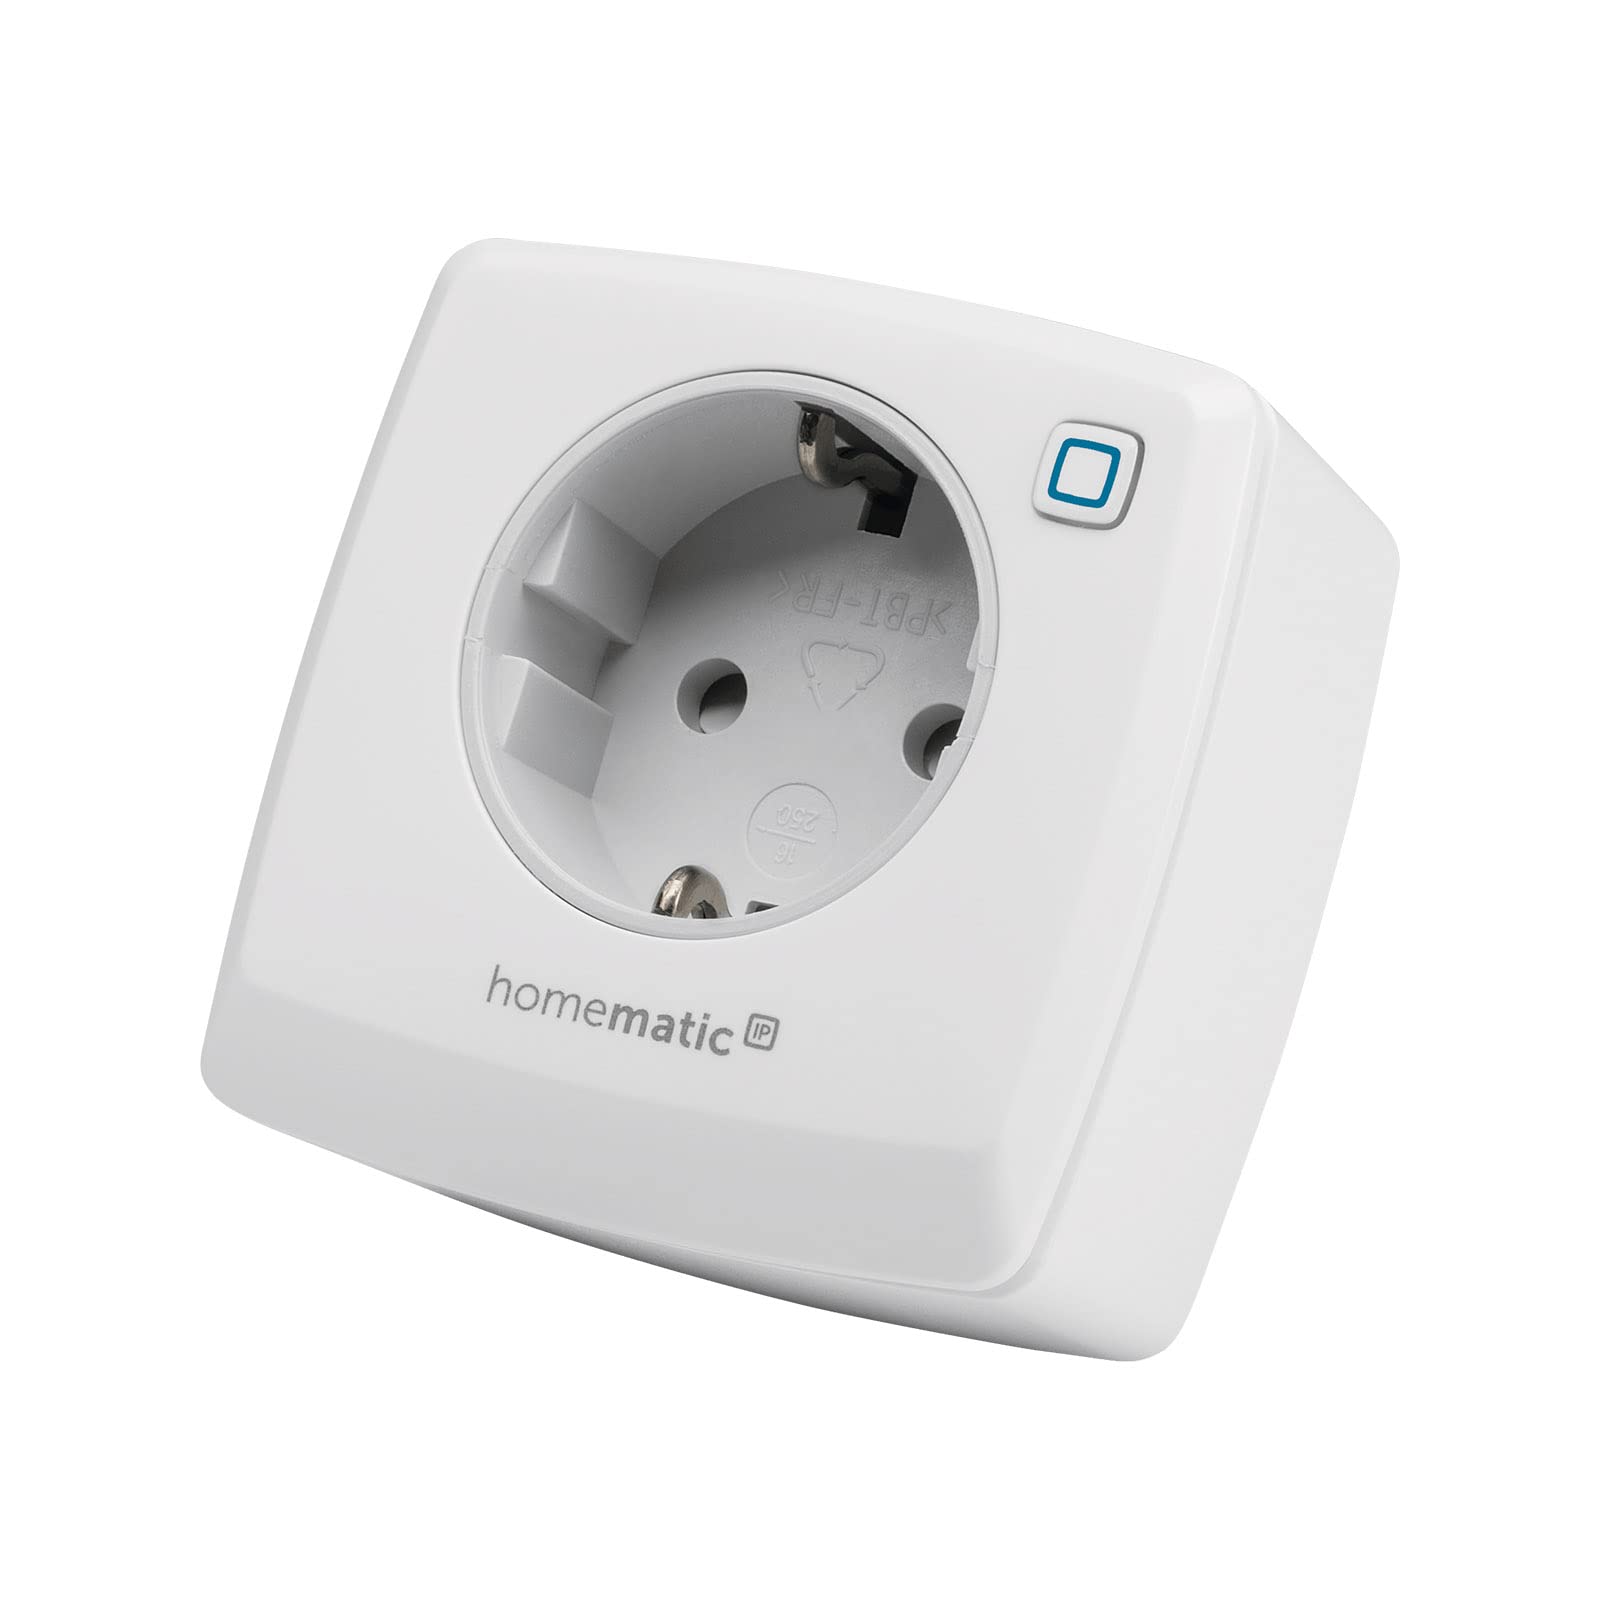 Homematic IP Smart Home Schaltsteckdose, digitaler Zwischenstecker steuert Leuchten oder Elektrogeräte per App, Alexa & Google Assistant, Energie sparen, 141836A0